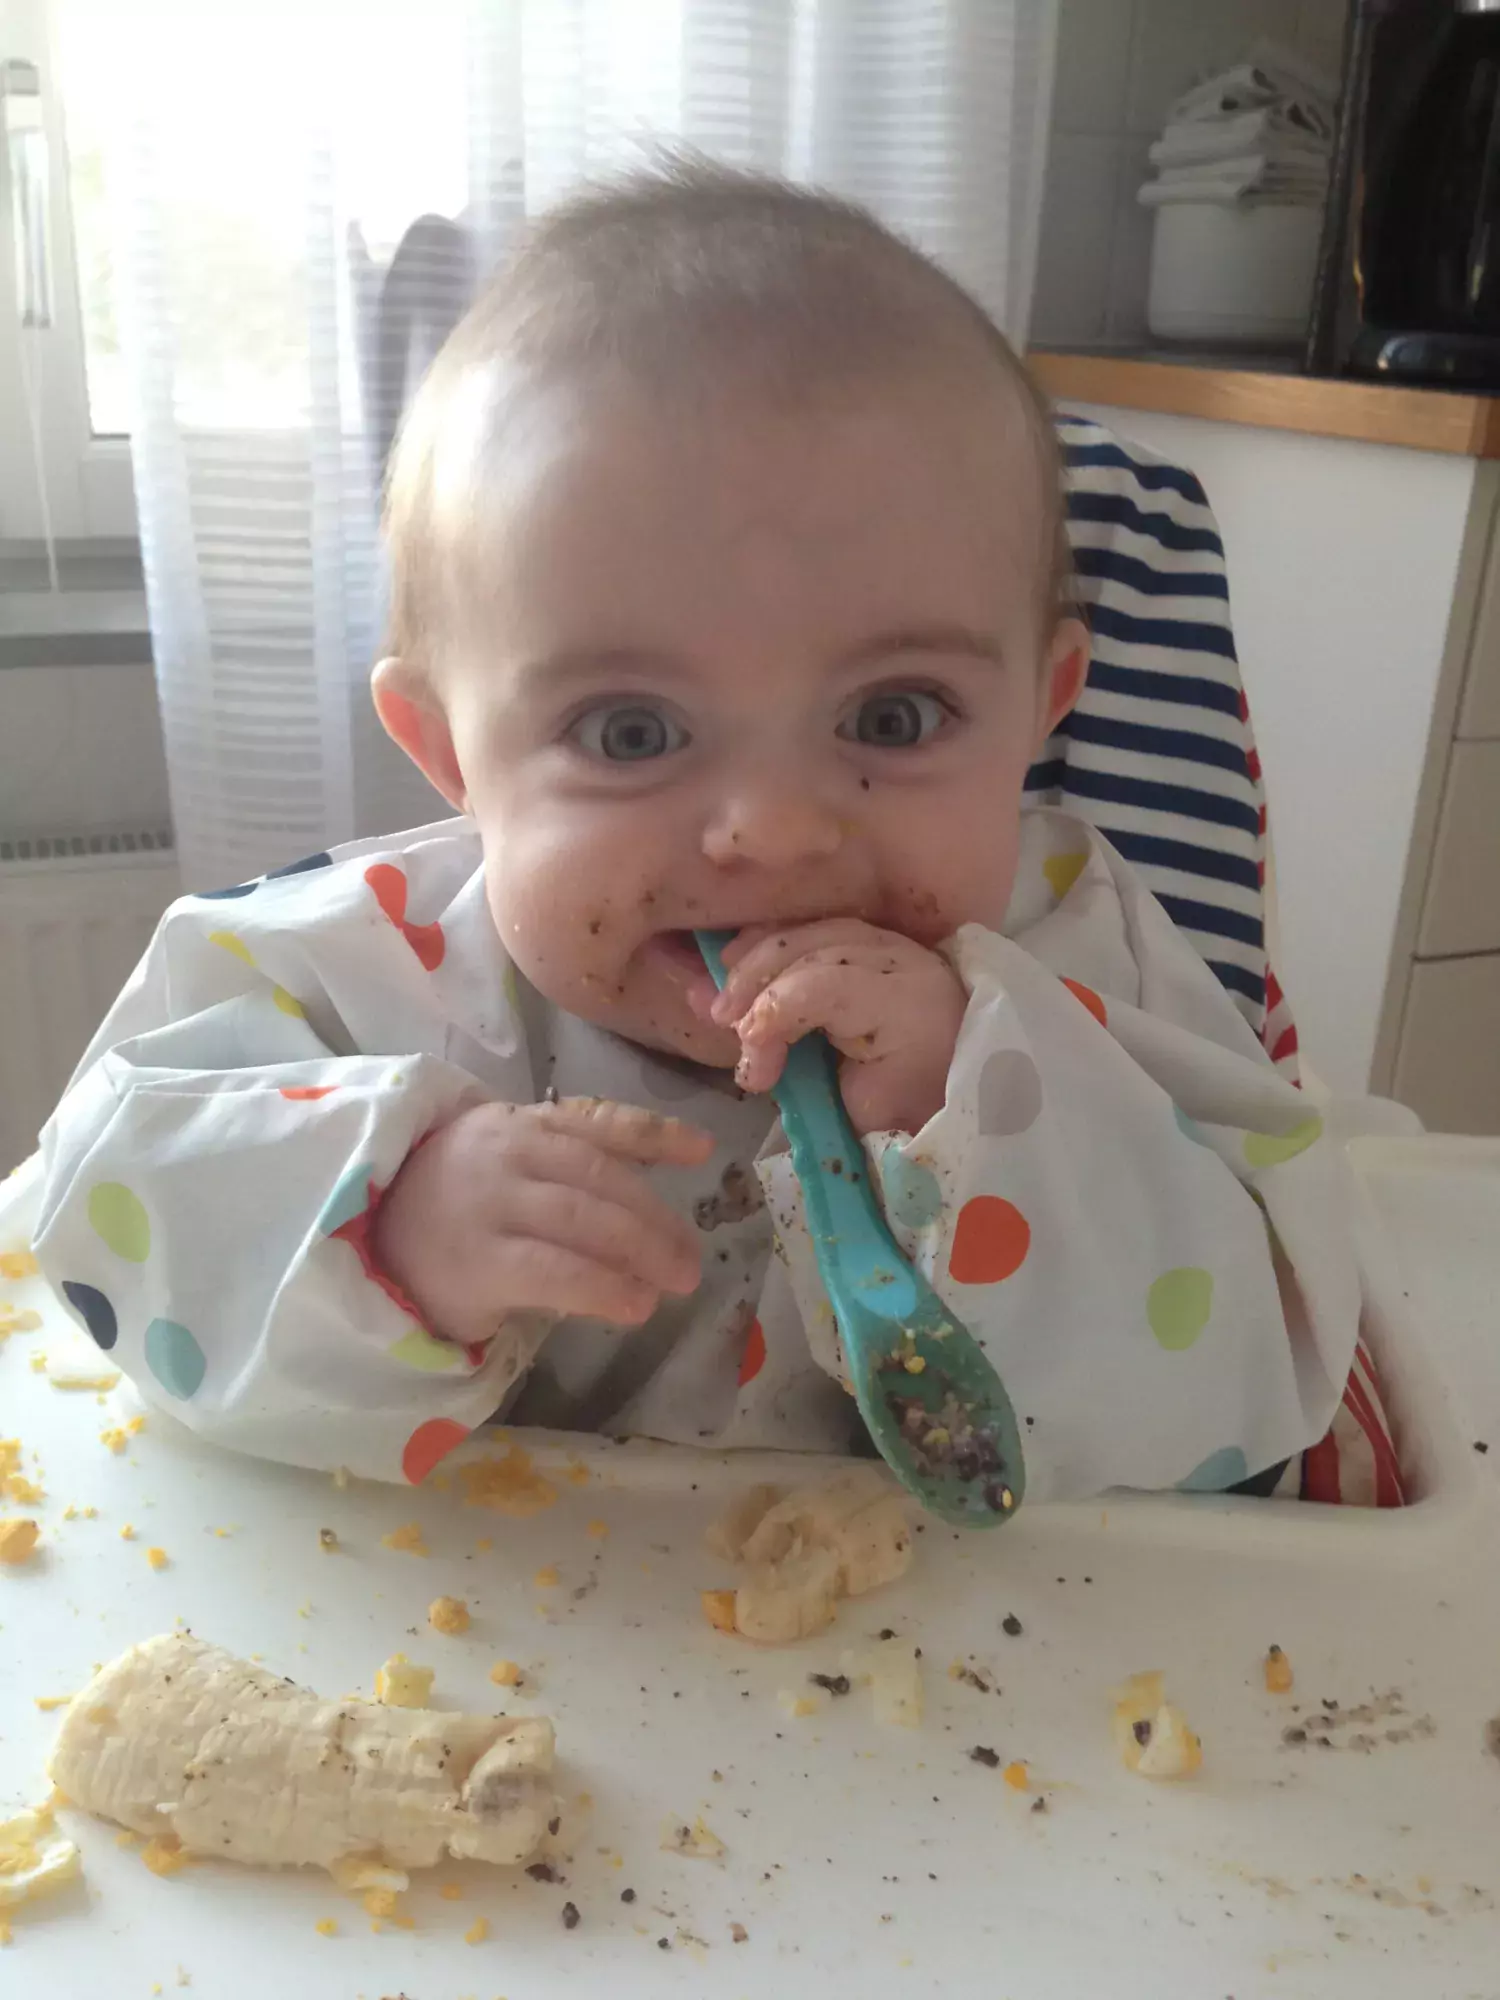 Child eating oat meal himself.